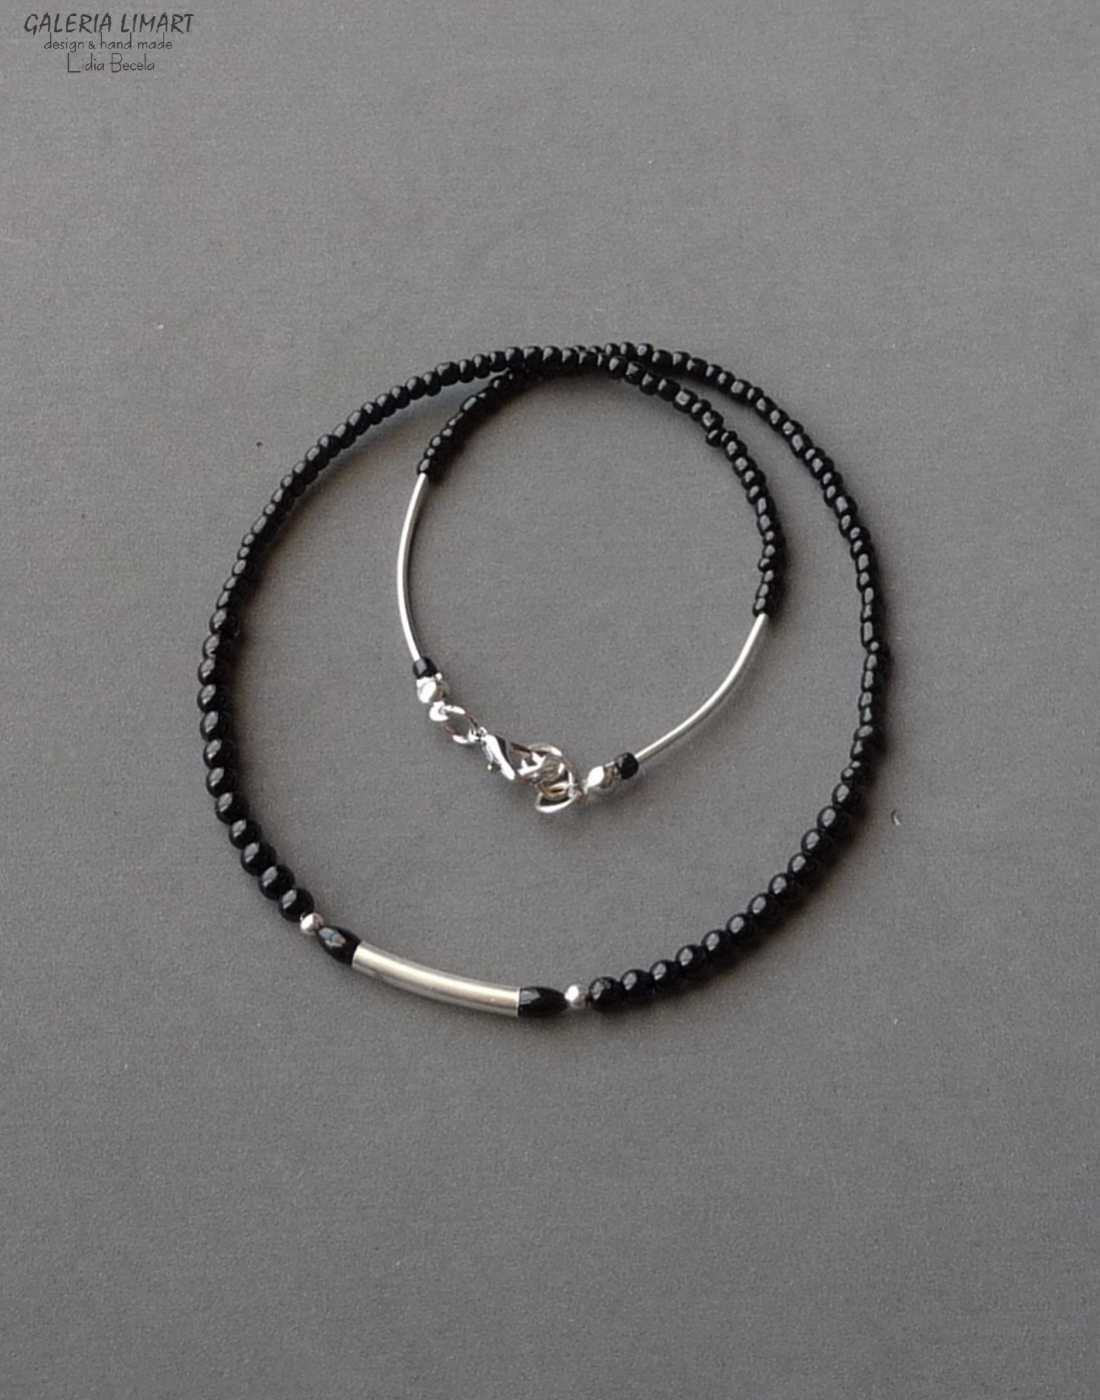 minimalistyczny naszyjnik z mnóstwa drobnych czarnych szklanych koralików (seed beads) dodatkowo ozdobiobny stalowymi rurkami. Dla NIEGO lub dla NIEJ